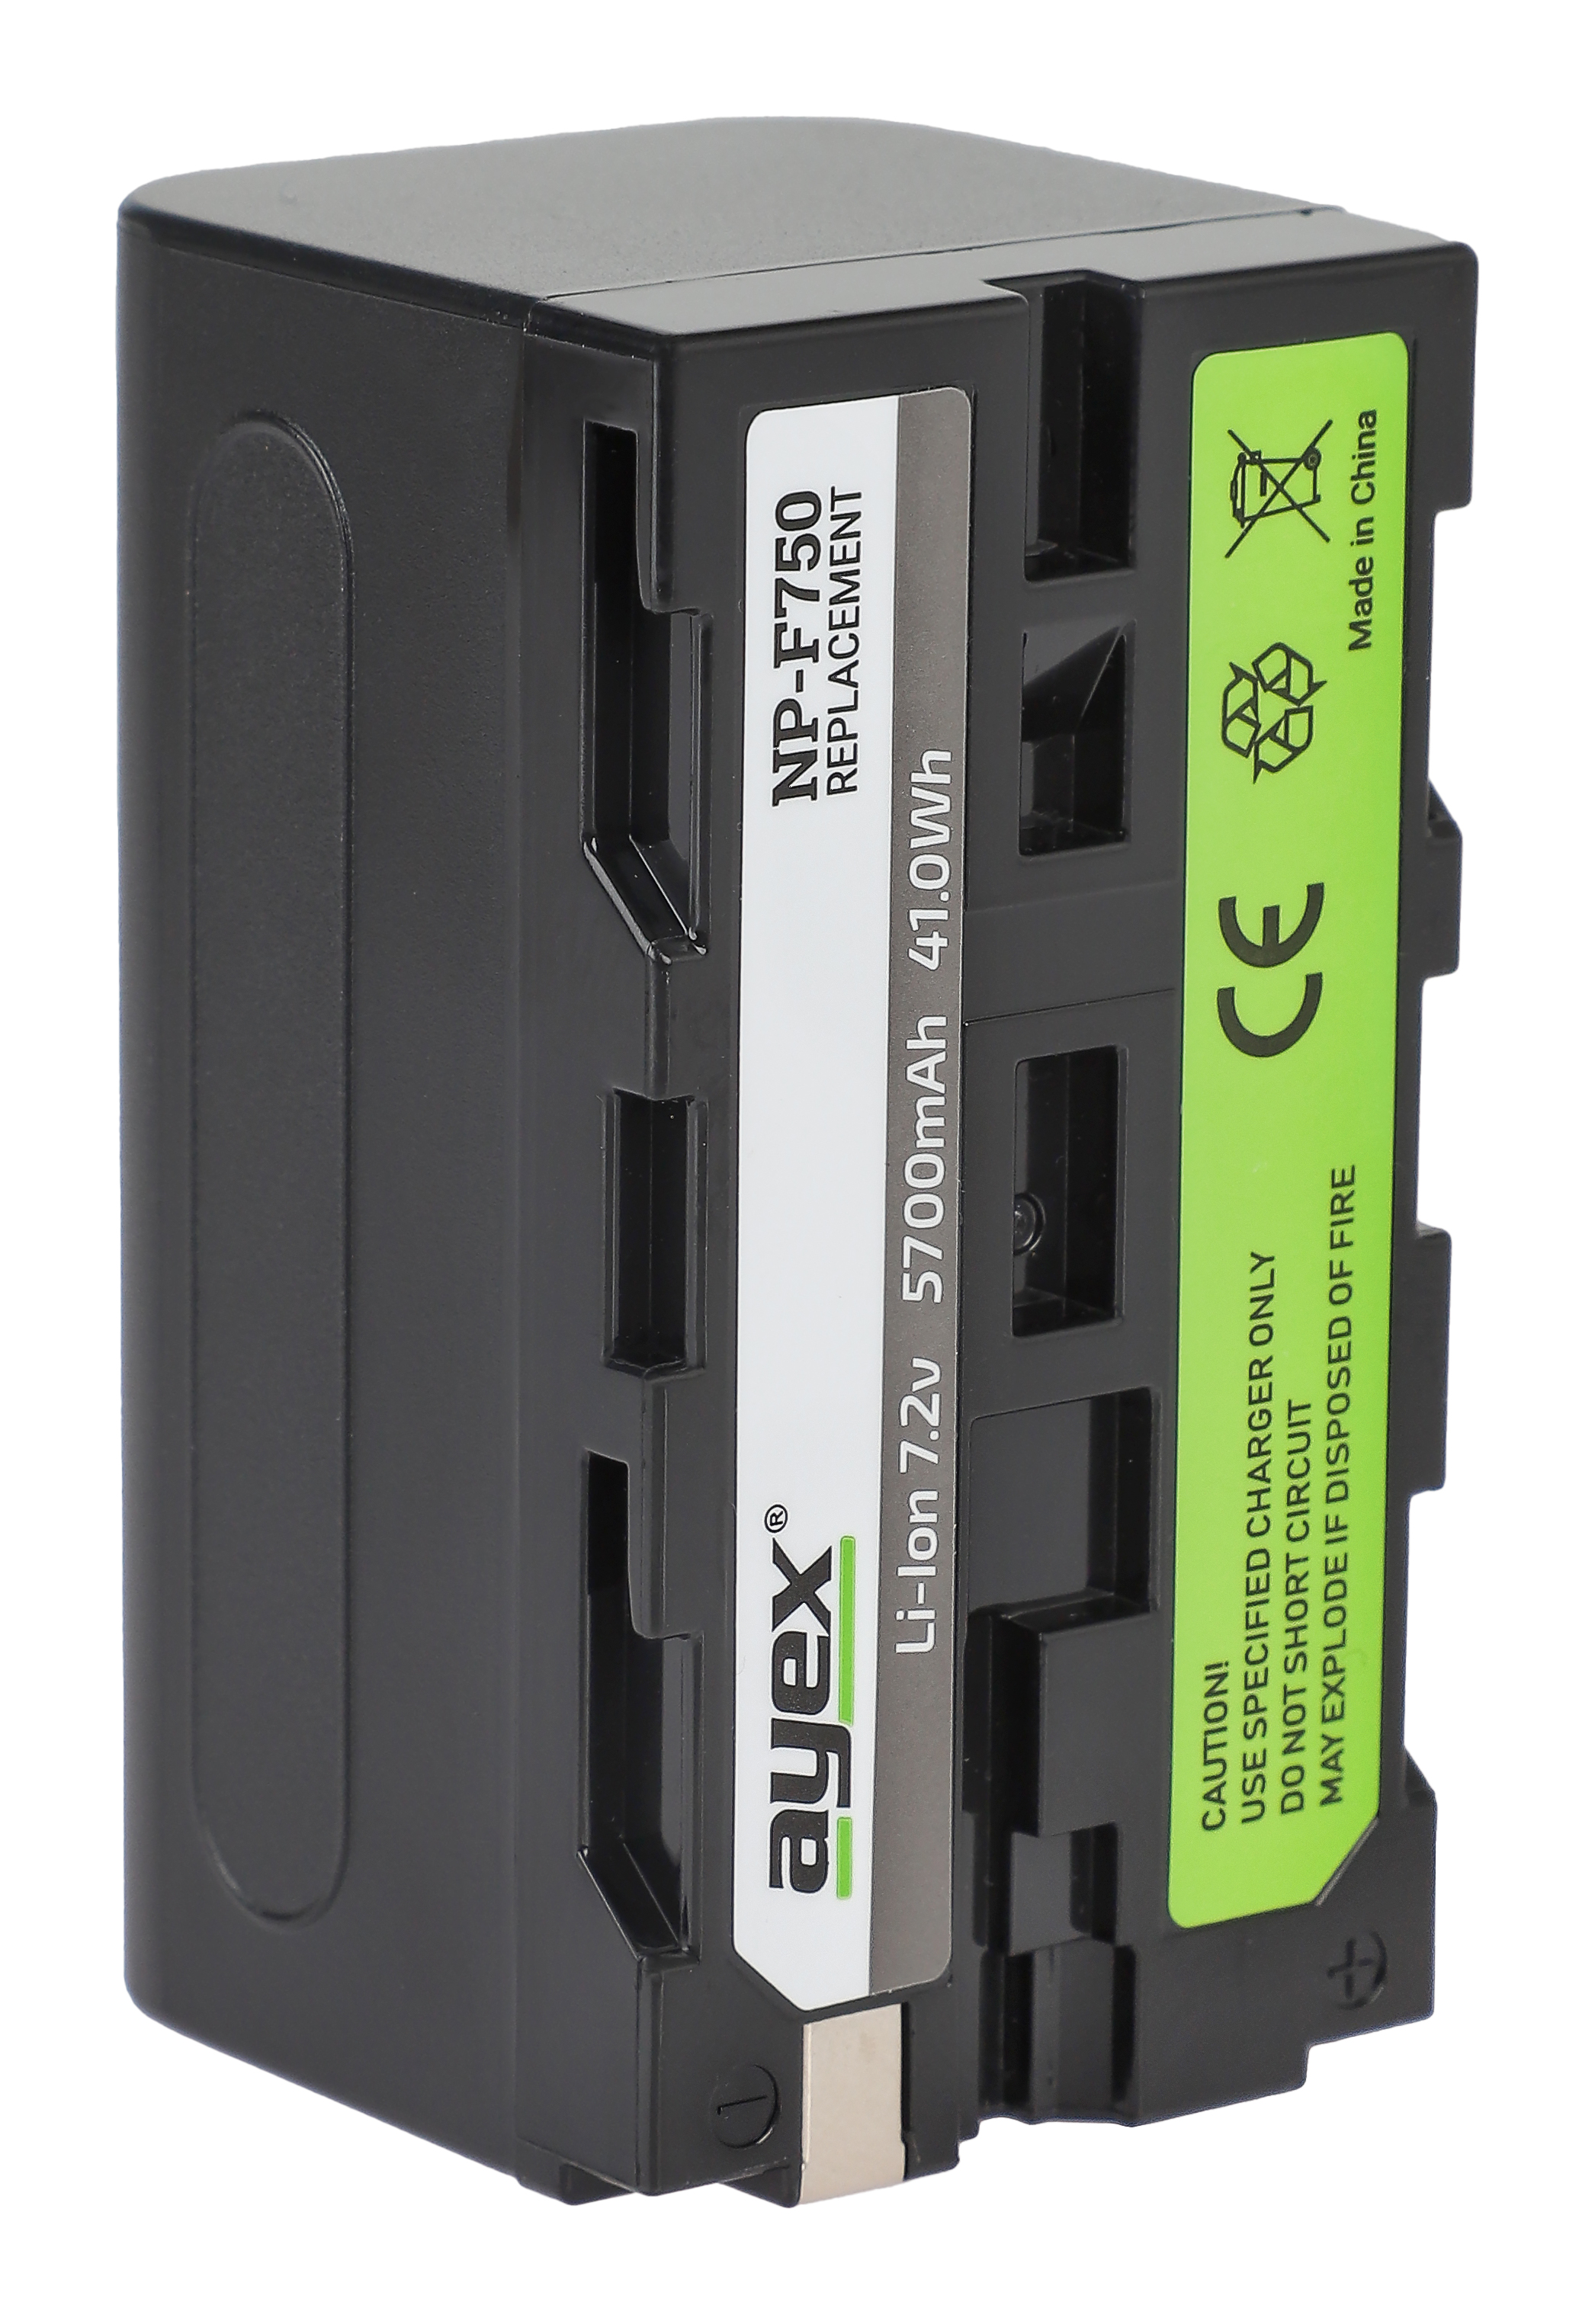 ayex NP-F750 Akku für zB Sony Camcorder & div. Dauerlichter leistungsstark und zuverlässig mit Infochip